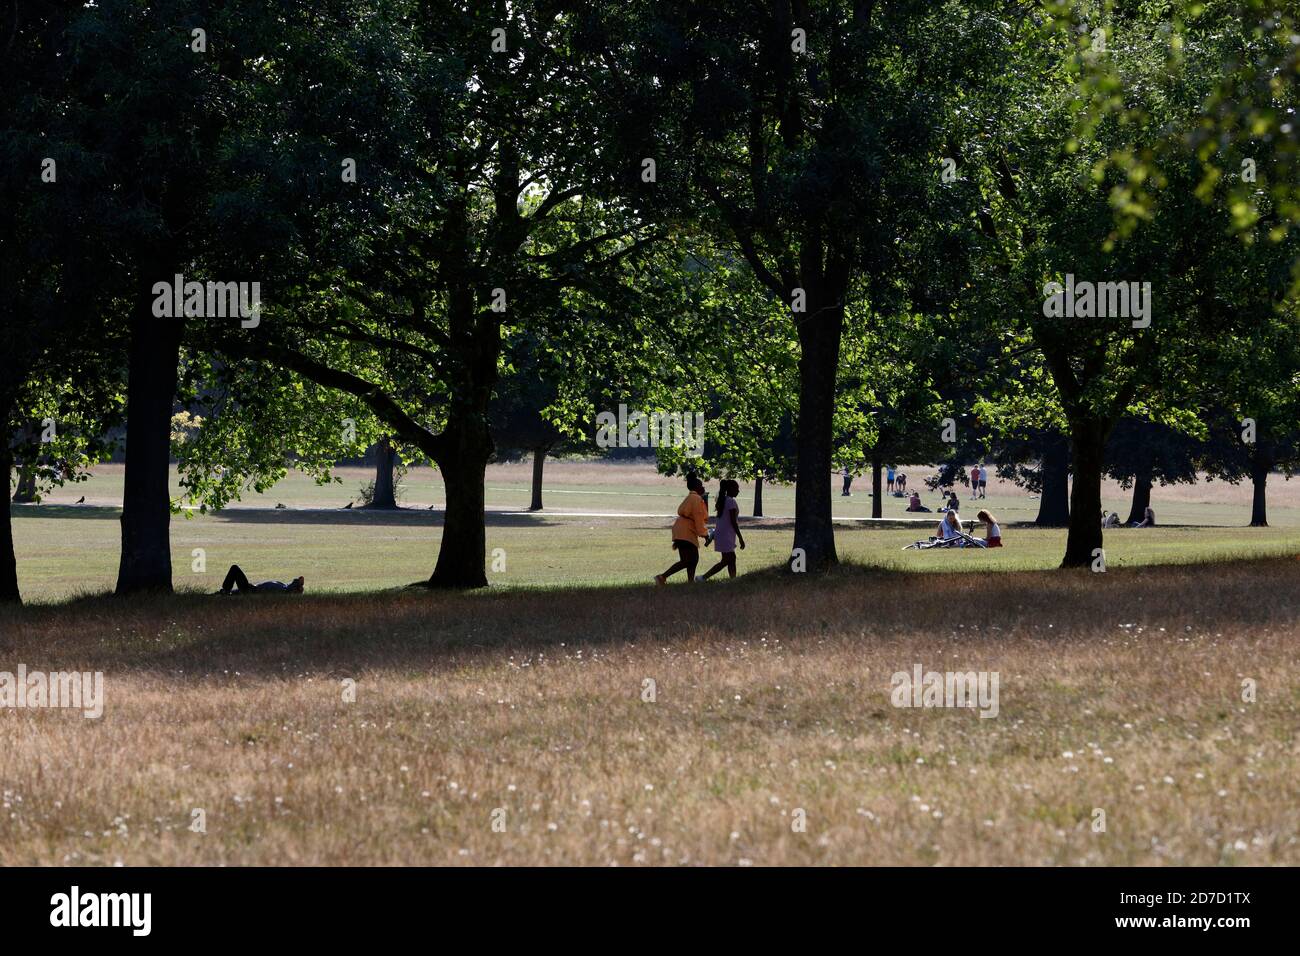 Sunbathing in Brockwell Park, Herne Hill, London, UK Stock Photo